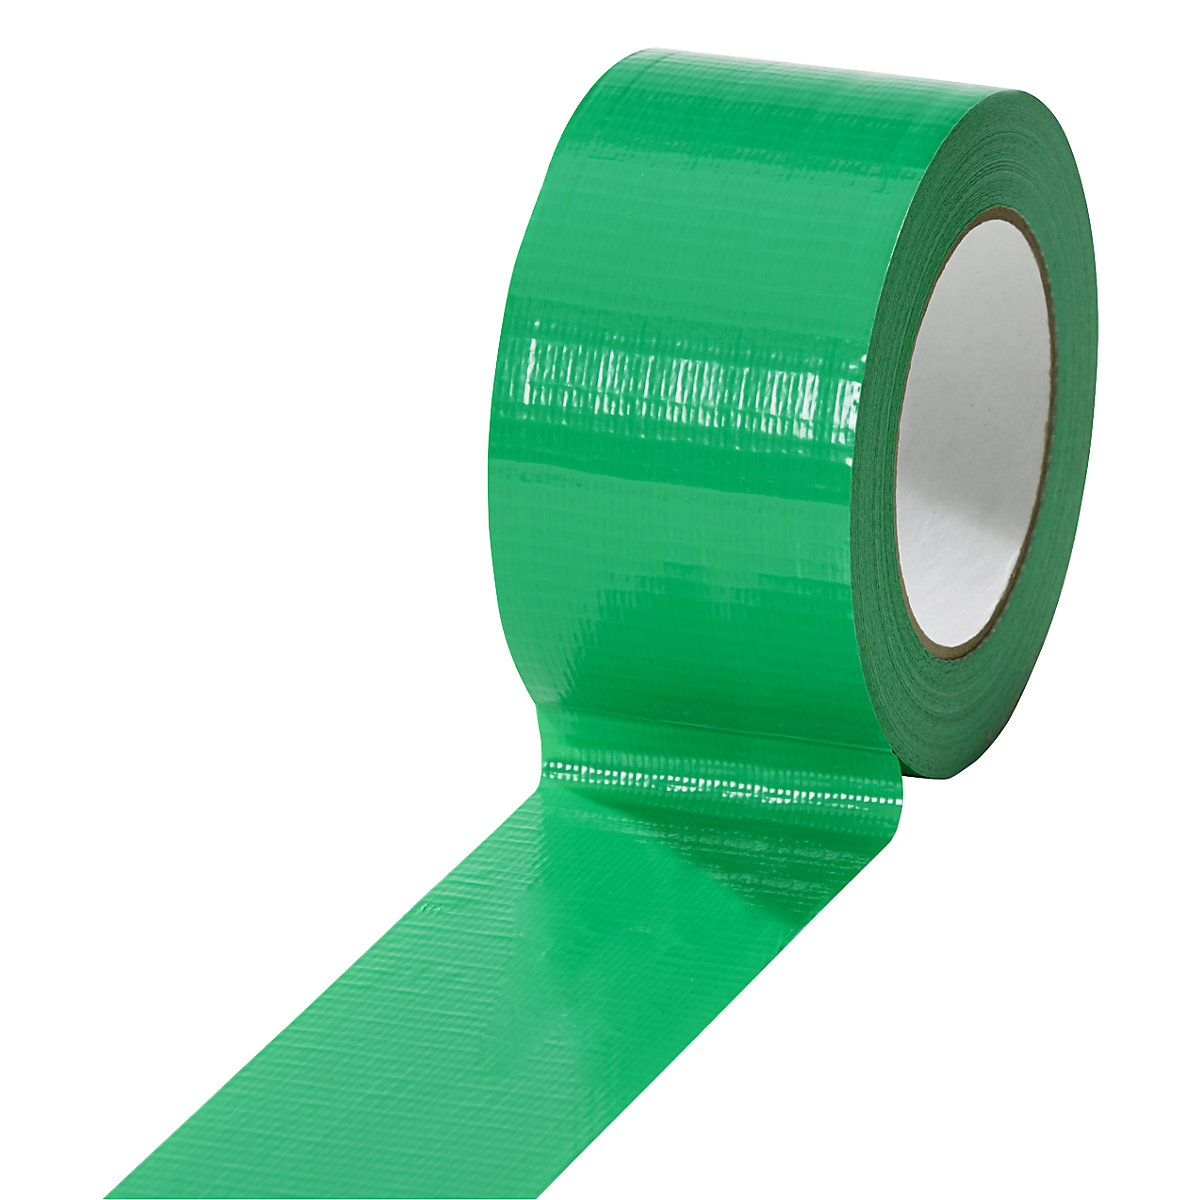 Traka od tkanine, u različitim bojama, pak. 18 rola, u zelenoj boji, širina trake 50 mm-16